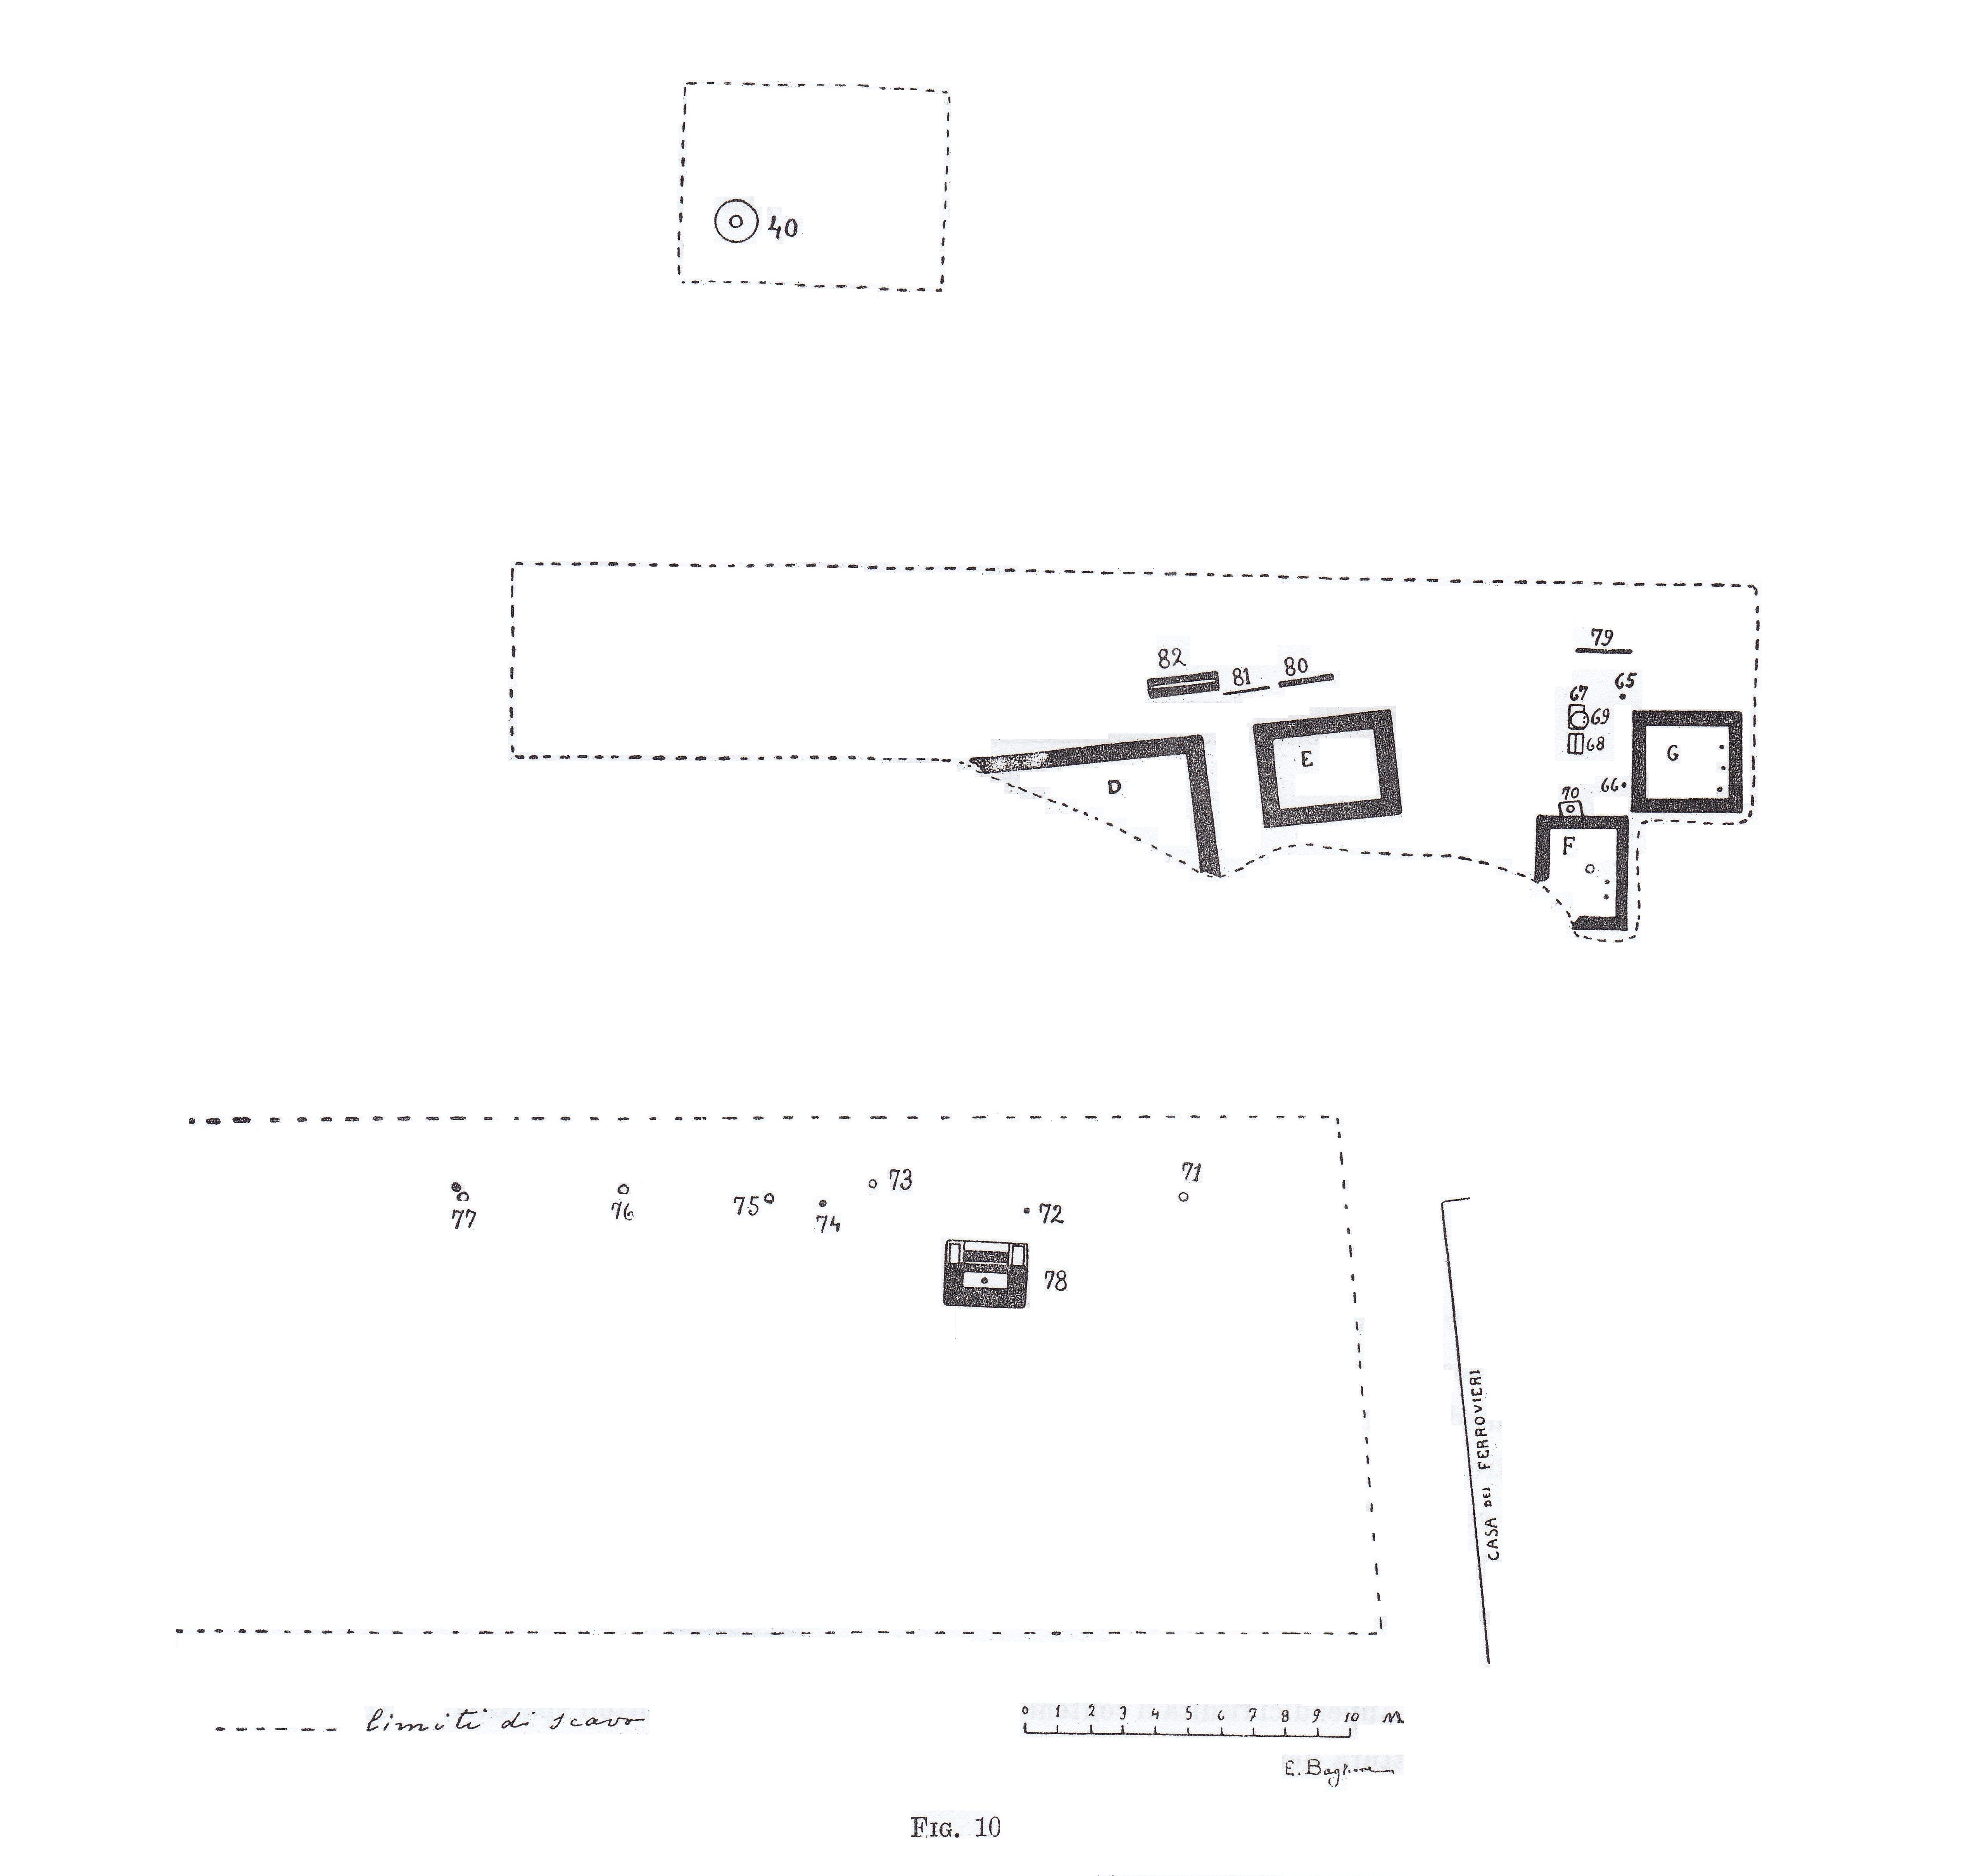 Necropoli di Albintimilium, Recinto D (recinto, area ad uso funerario) - Ventimiglia (IM)  (metà/ metà Età romana imperiale)